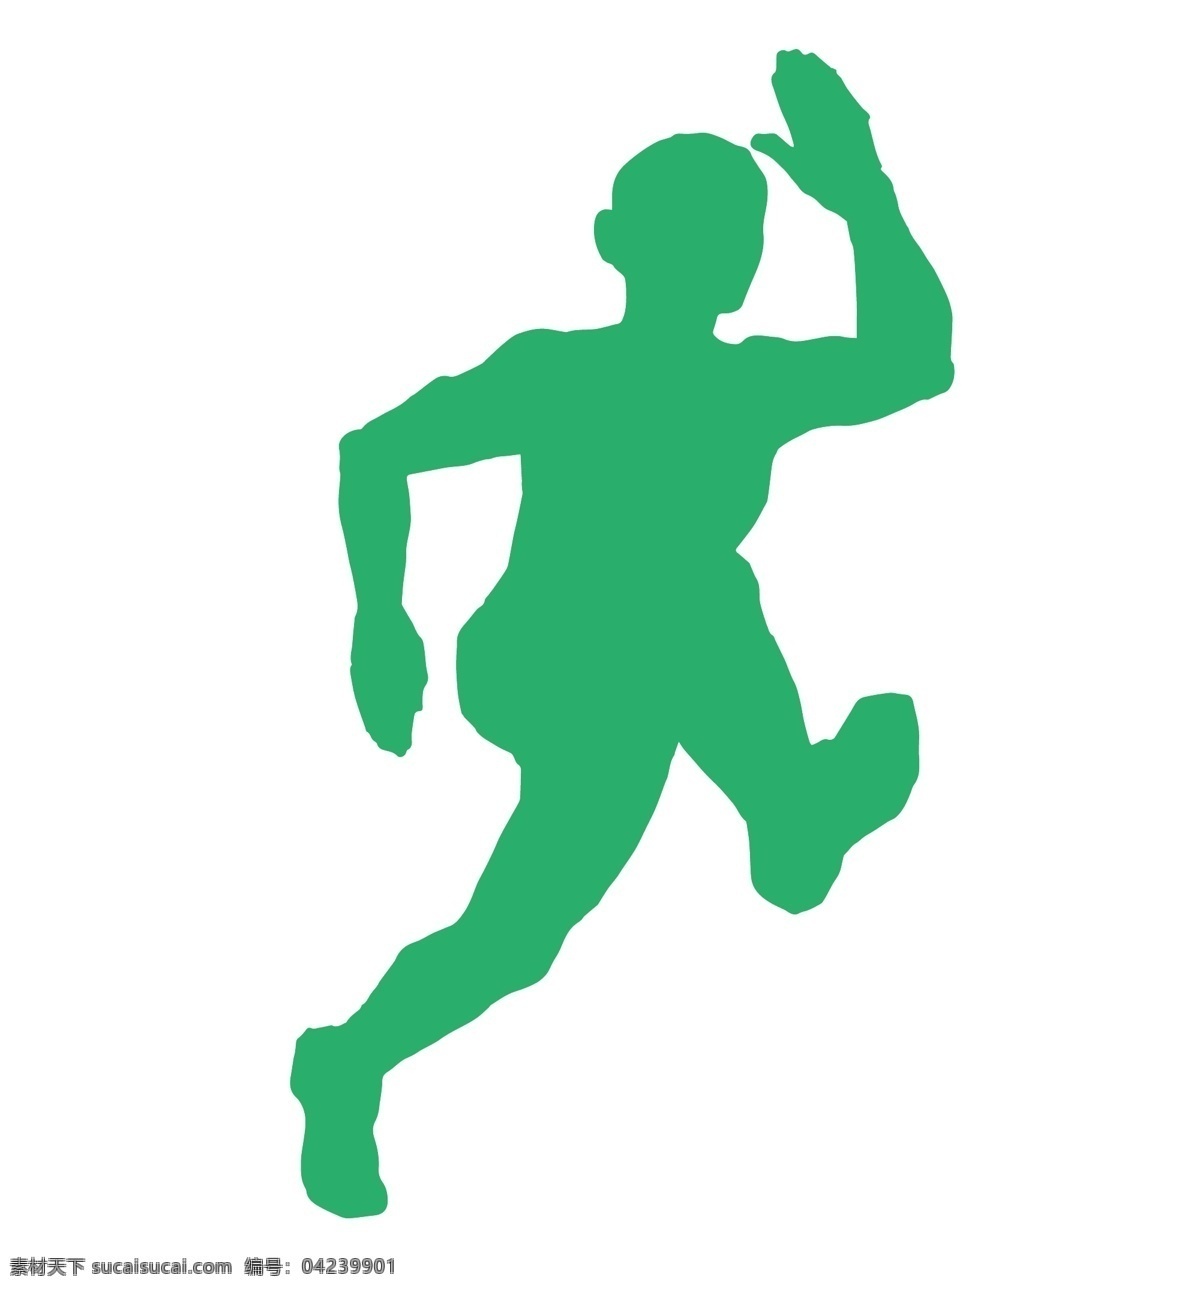 奔跑 跨栏 运动员 剪影 绿色 矢量 冲刺 夺冠 跑步运动 锻炼 练习 跑步训练 人物剪影 运动剪影 跳跃 急速